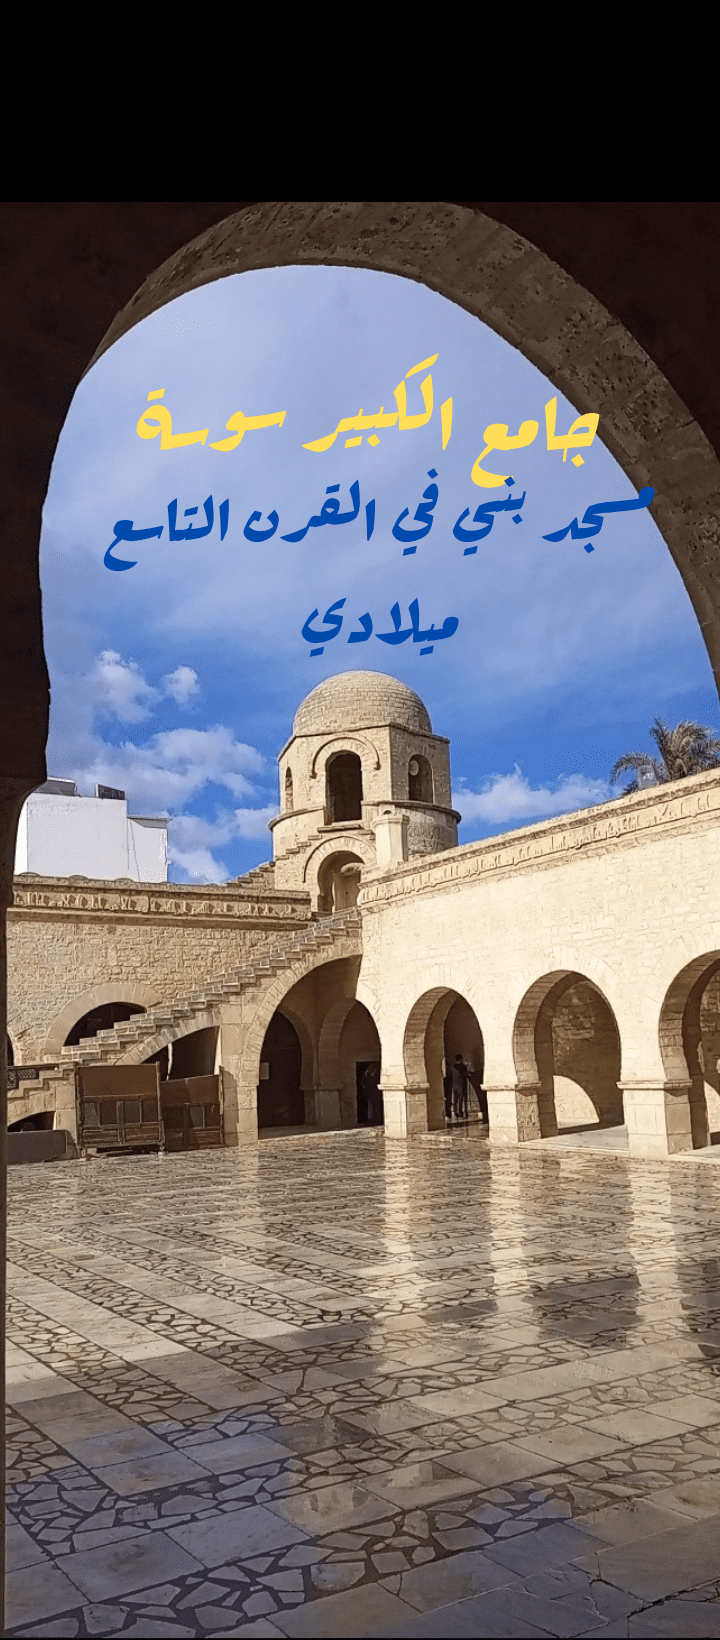 فيديو قصير عن جامع الكبير سوسة من أقدم المساجد في العالم الإسلامي